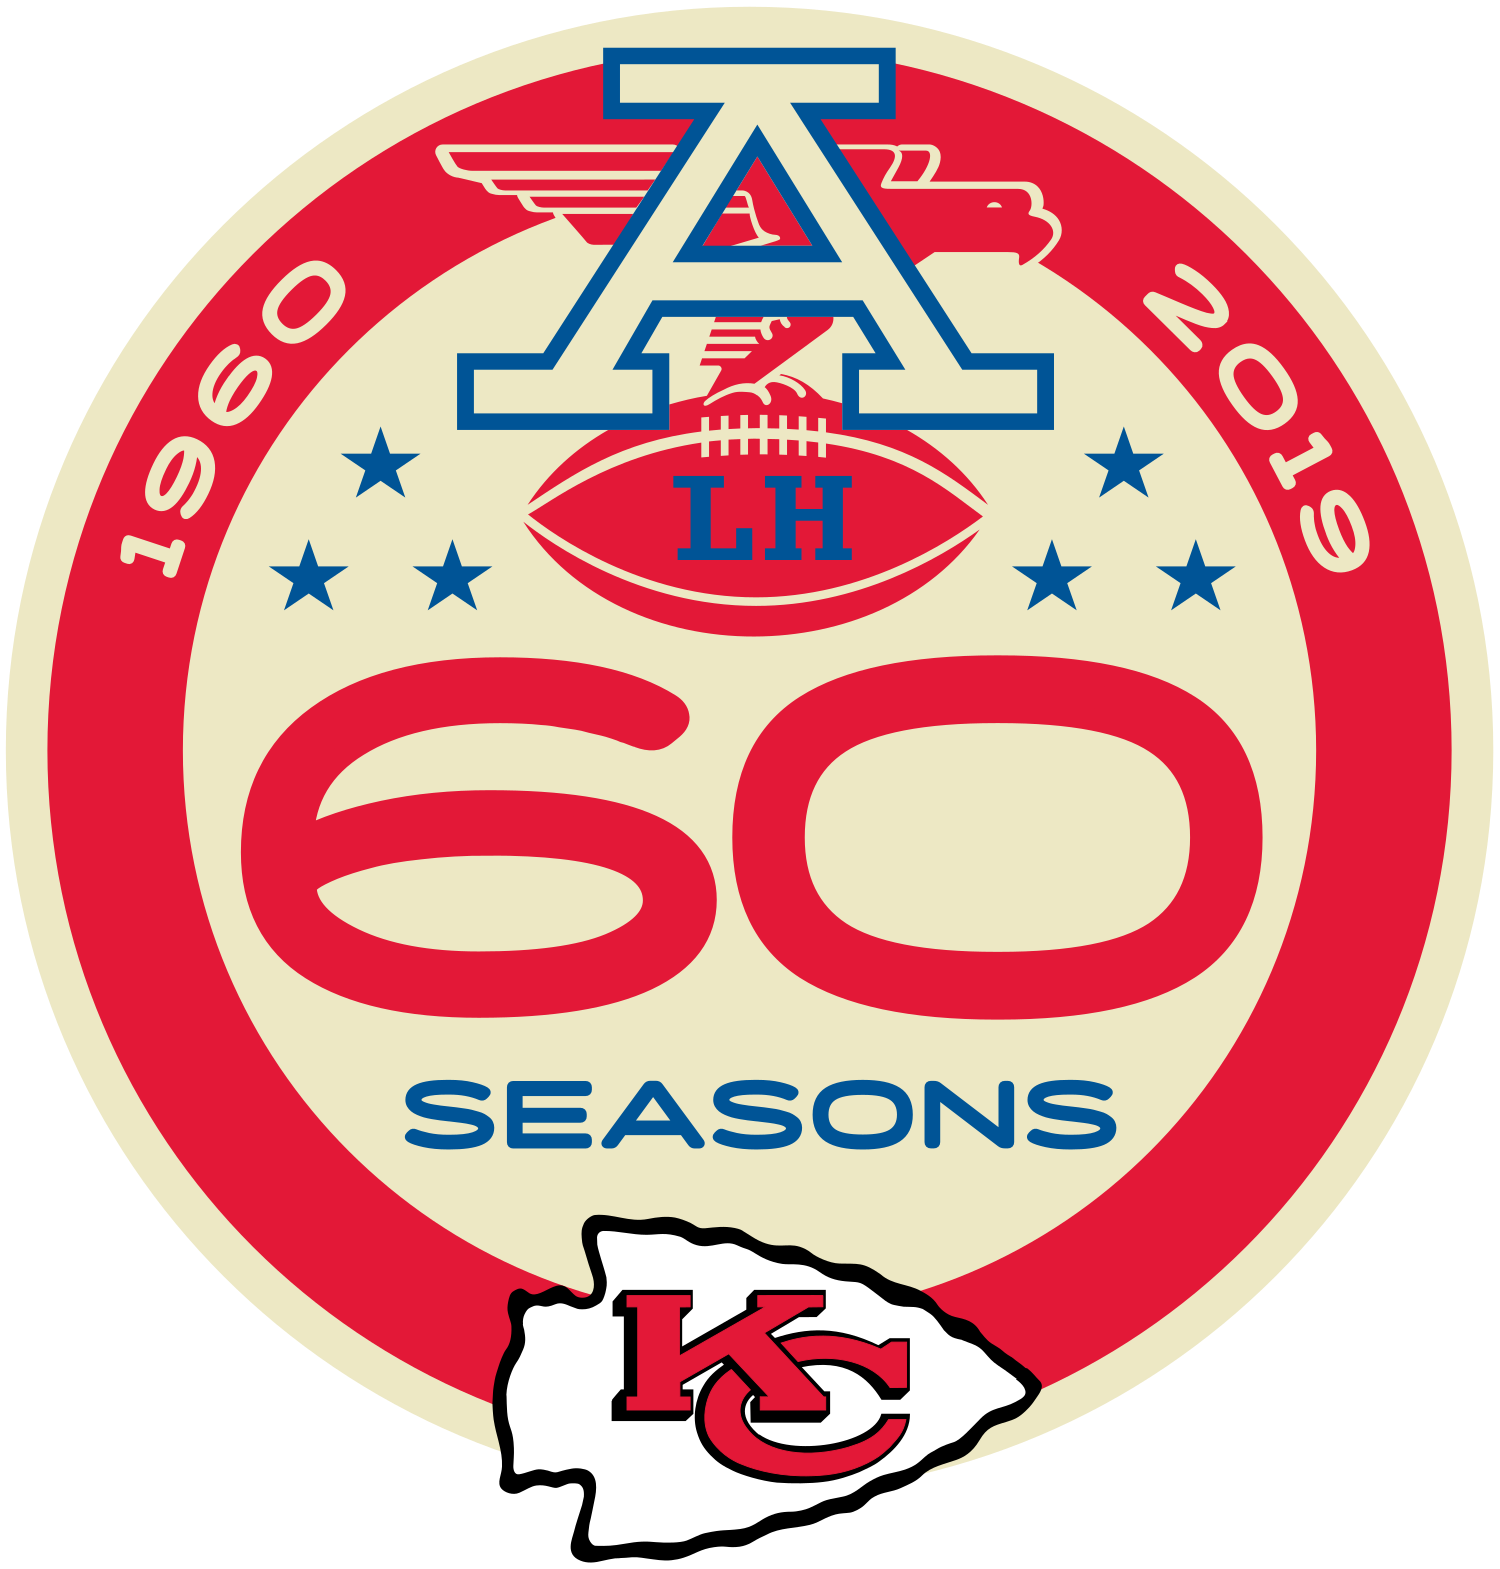 49ers 20-31 Chiefs (Feb 2, 2020) Final Score - ESPN